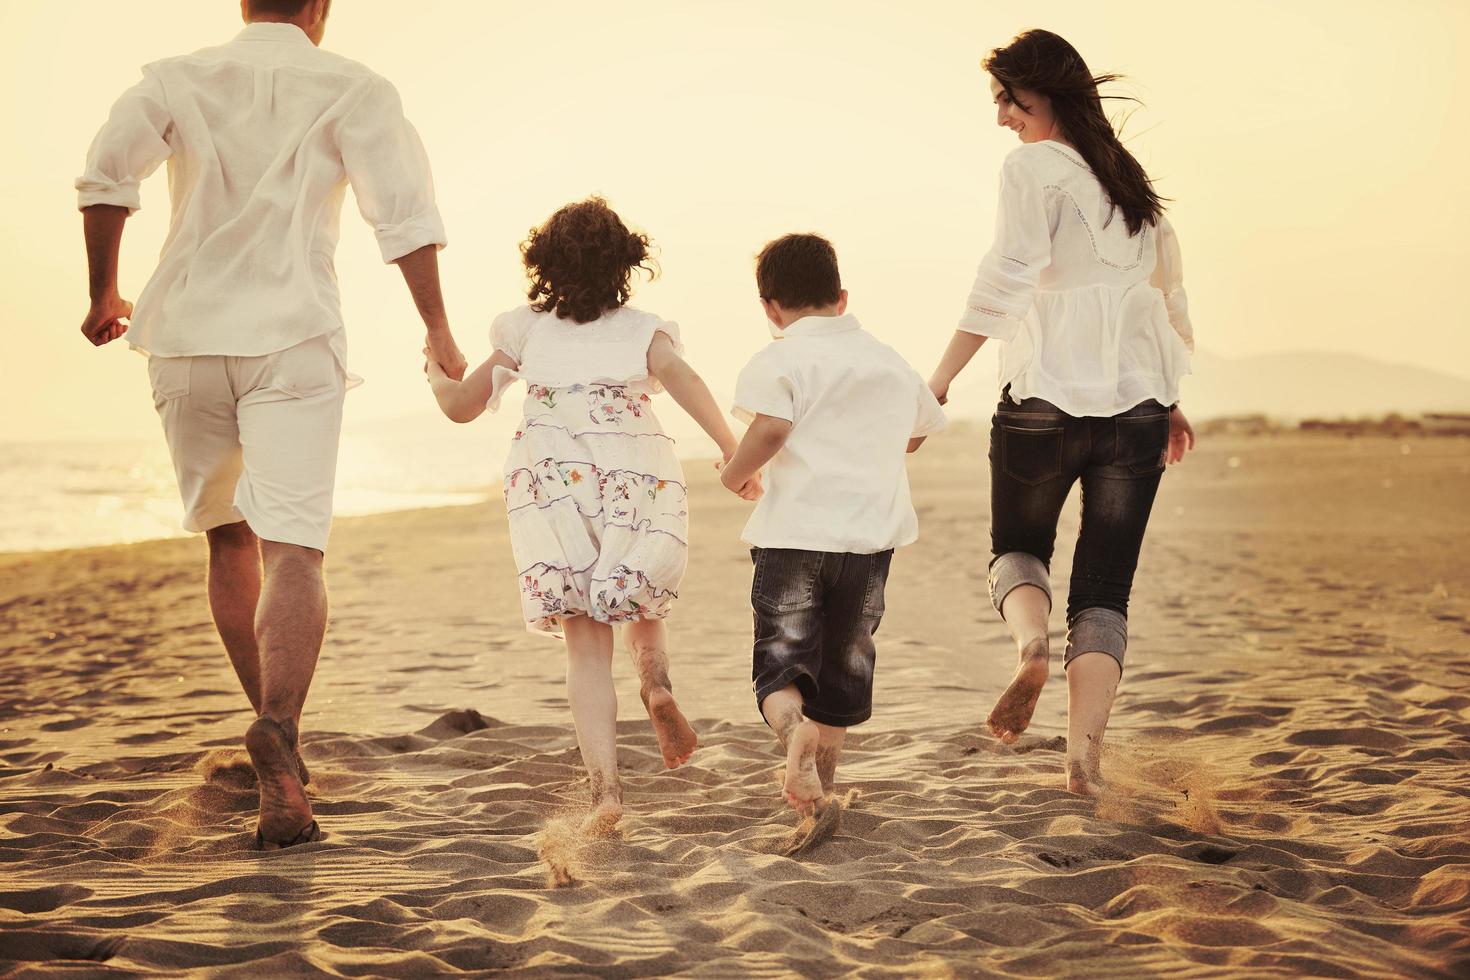 jeune famille heureuse s'amuser sur la plage au coucher du soleil photo